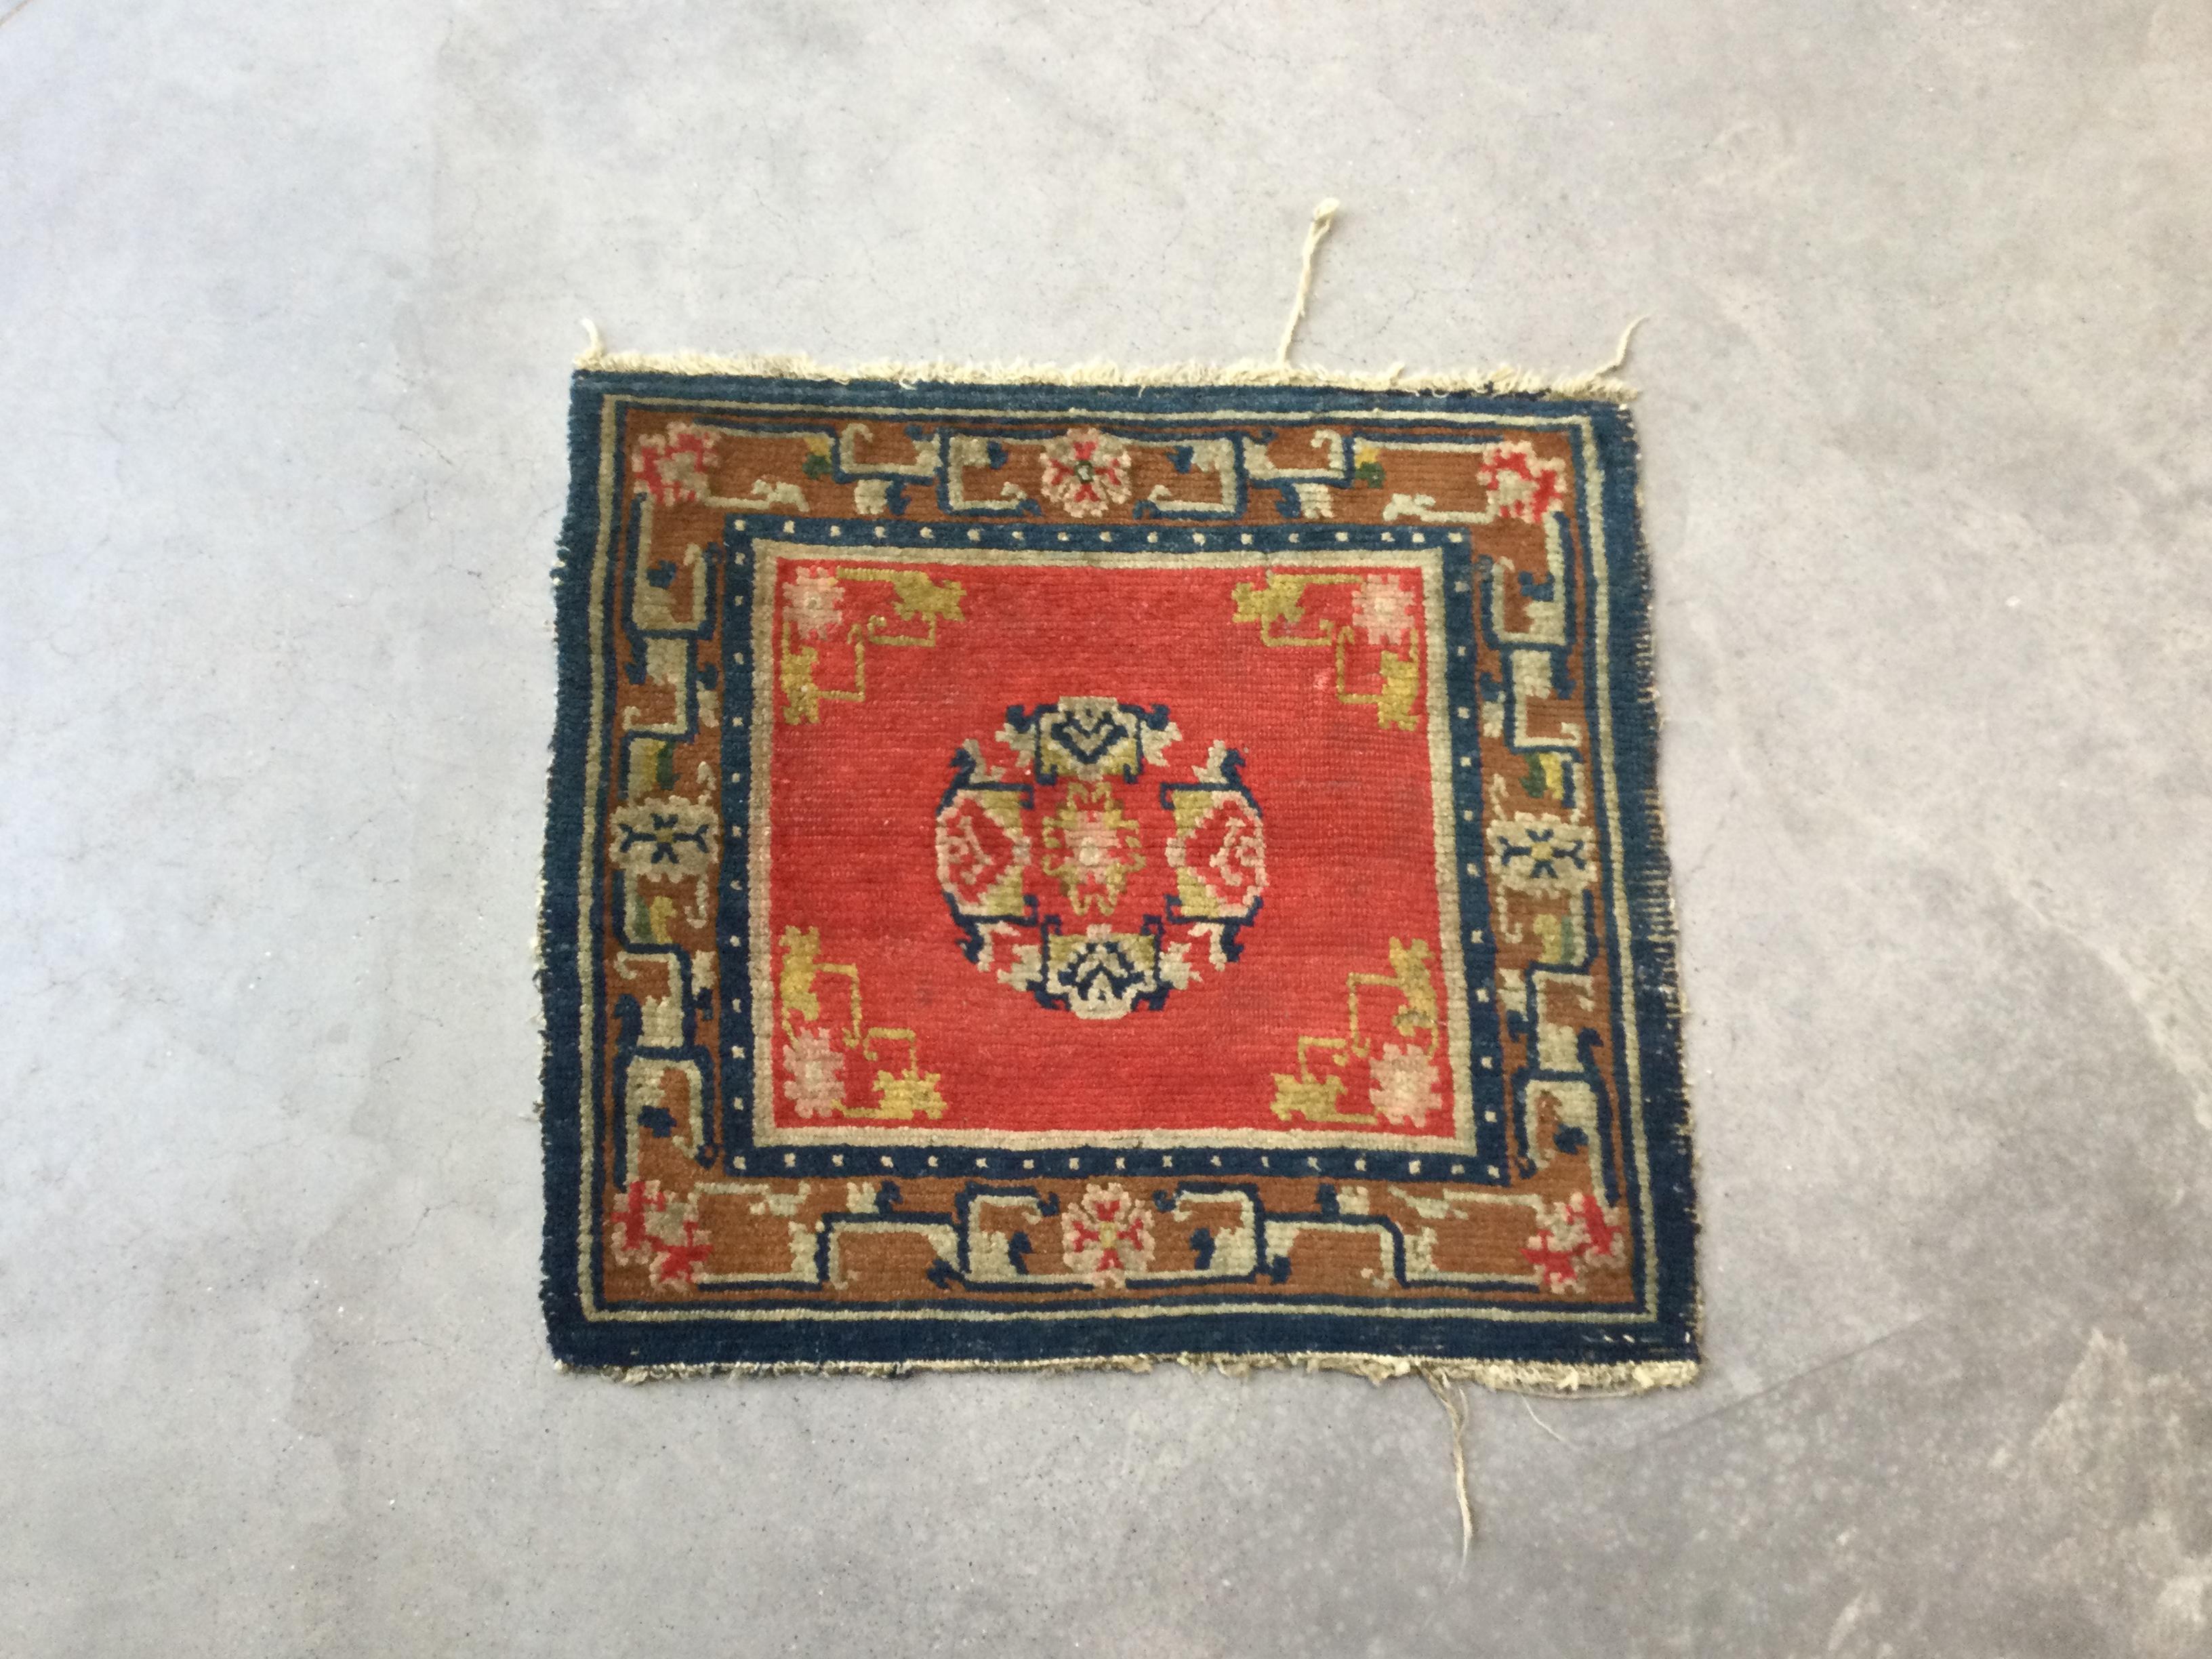 Antiker Teppich tibetischer Herkunft aus der Zeit um 1930.
- Handgefertigt aus Wolle in den Handwerksbetrieben der Firma Zigler.
- Wolldesigns, die beim Tragen ein konstantes Gefühl von Weichheit vermitteln.
- Enthält das zentrale Medaillon und alle